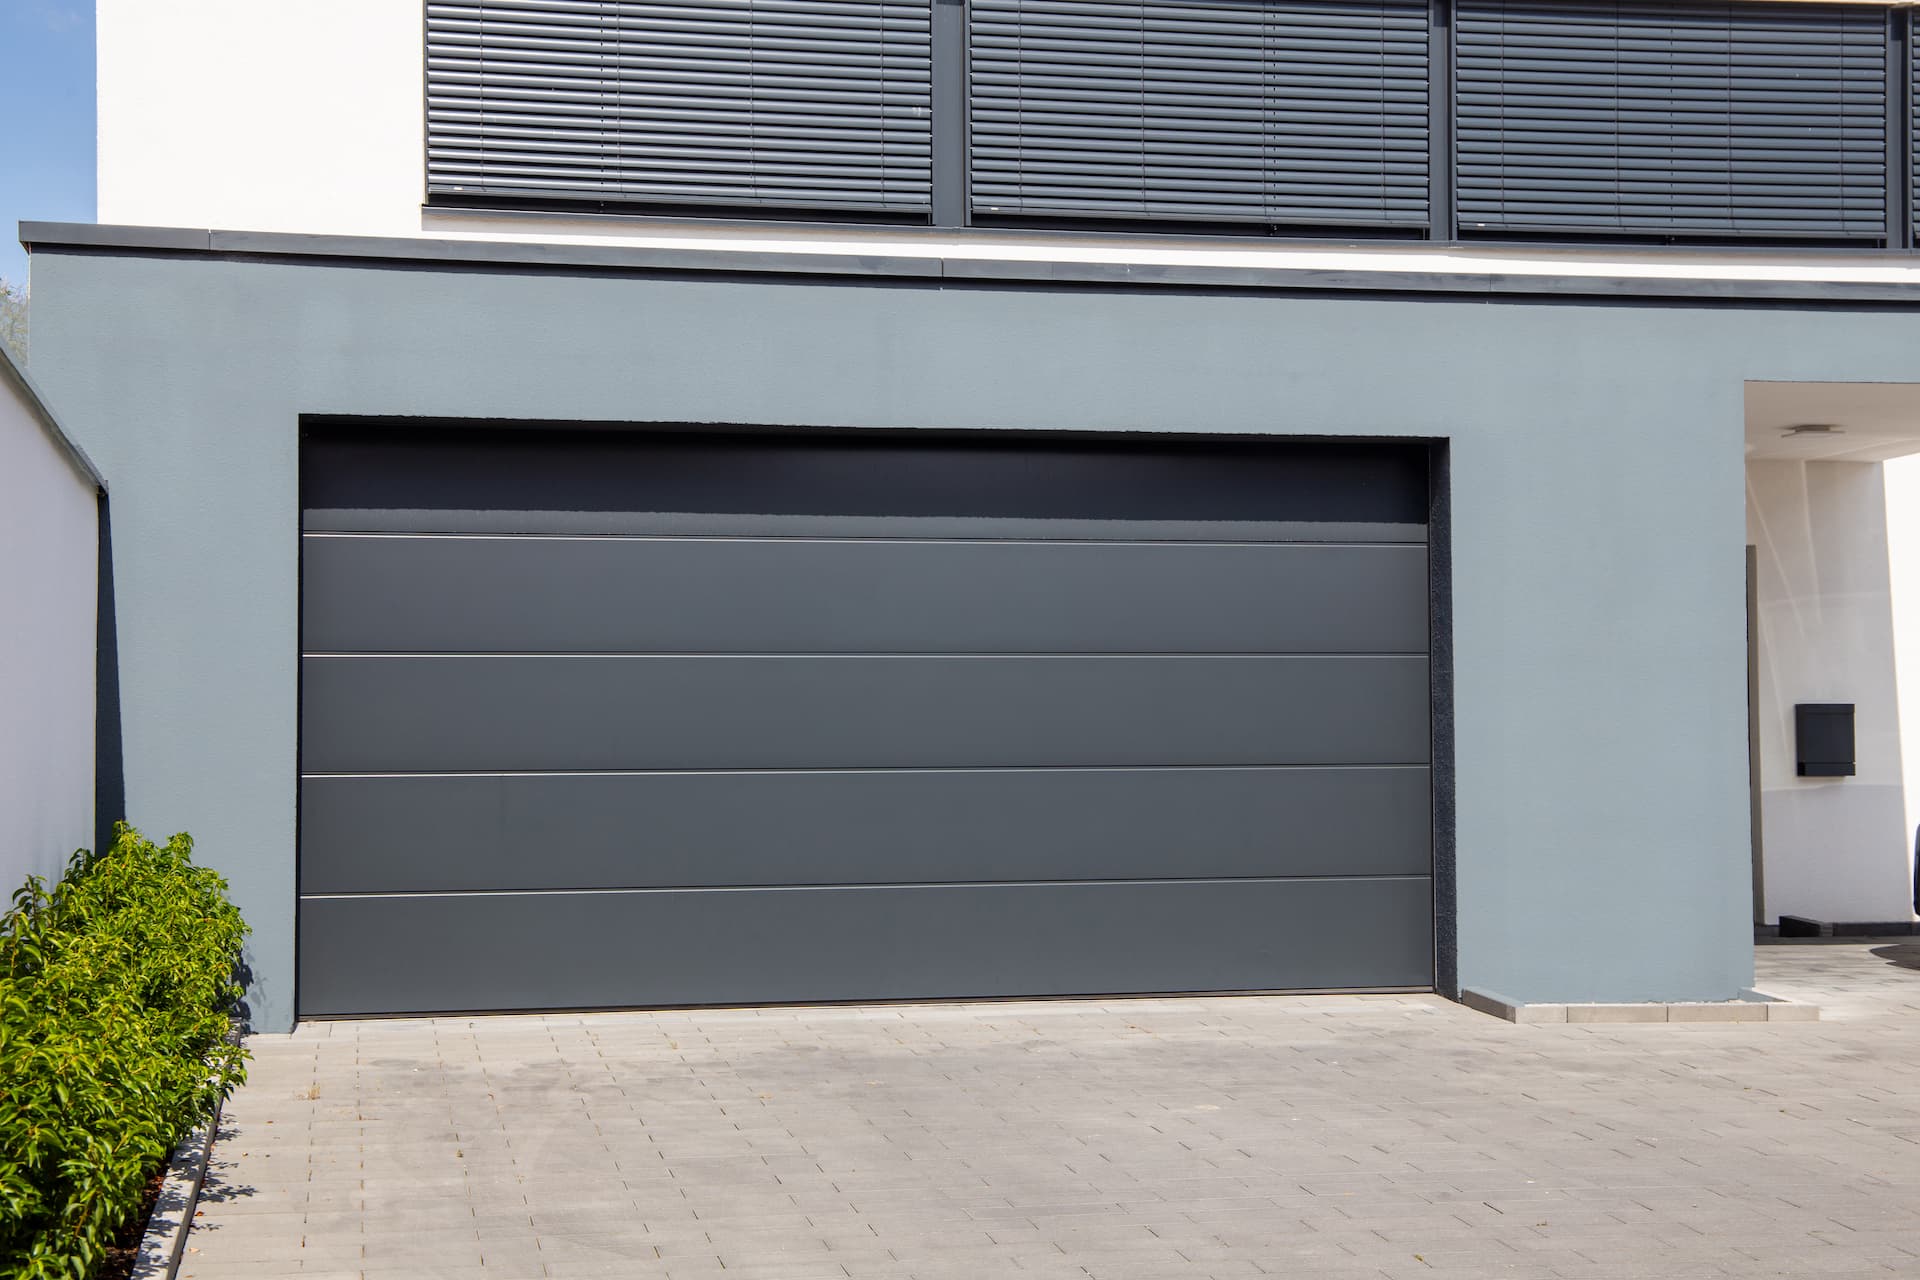 Insulated Garage Doors in Tiverton